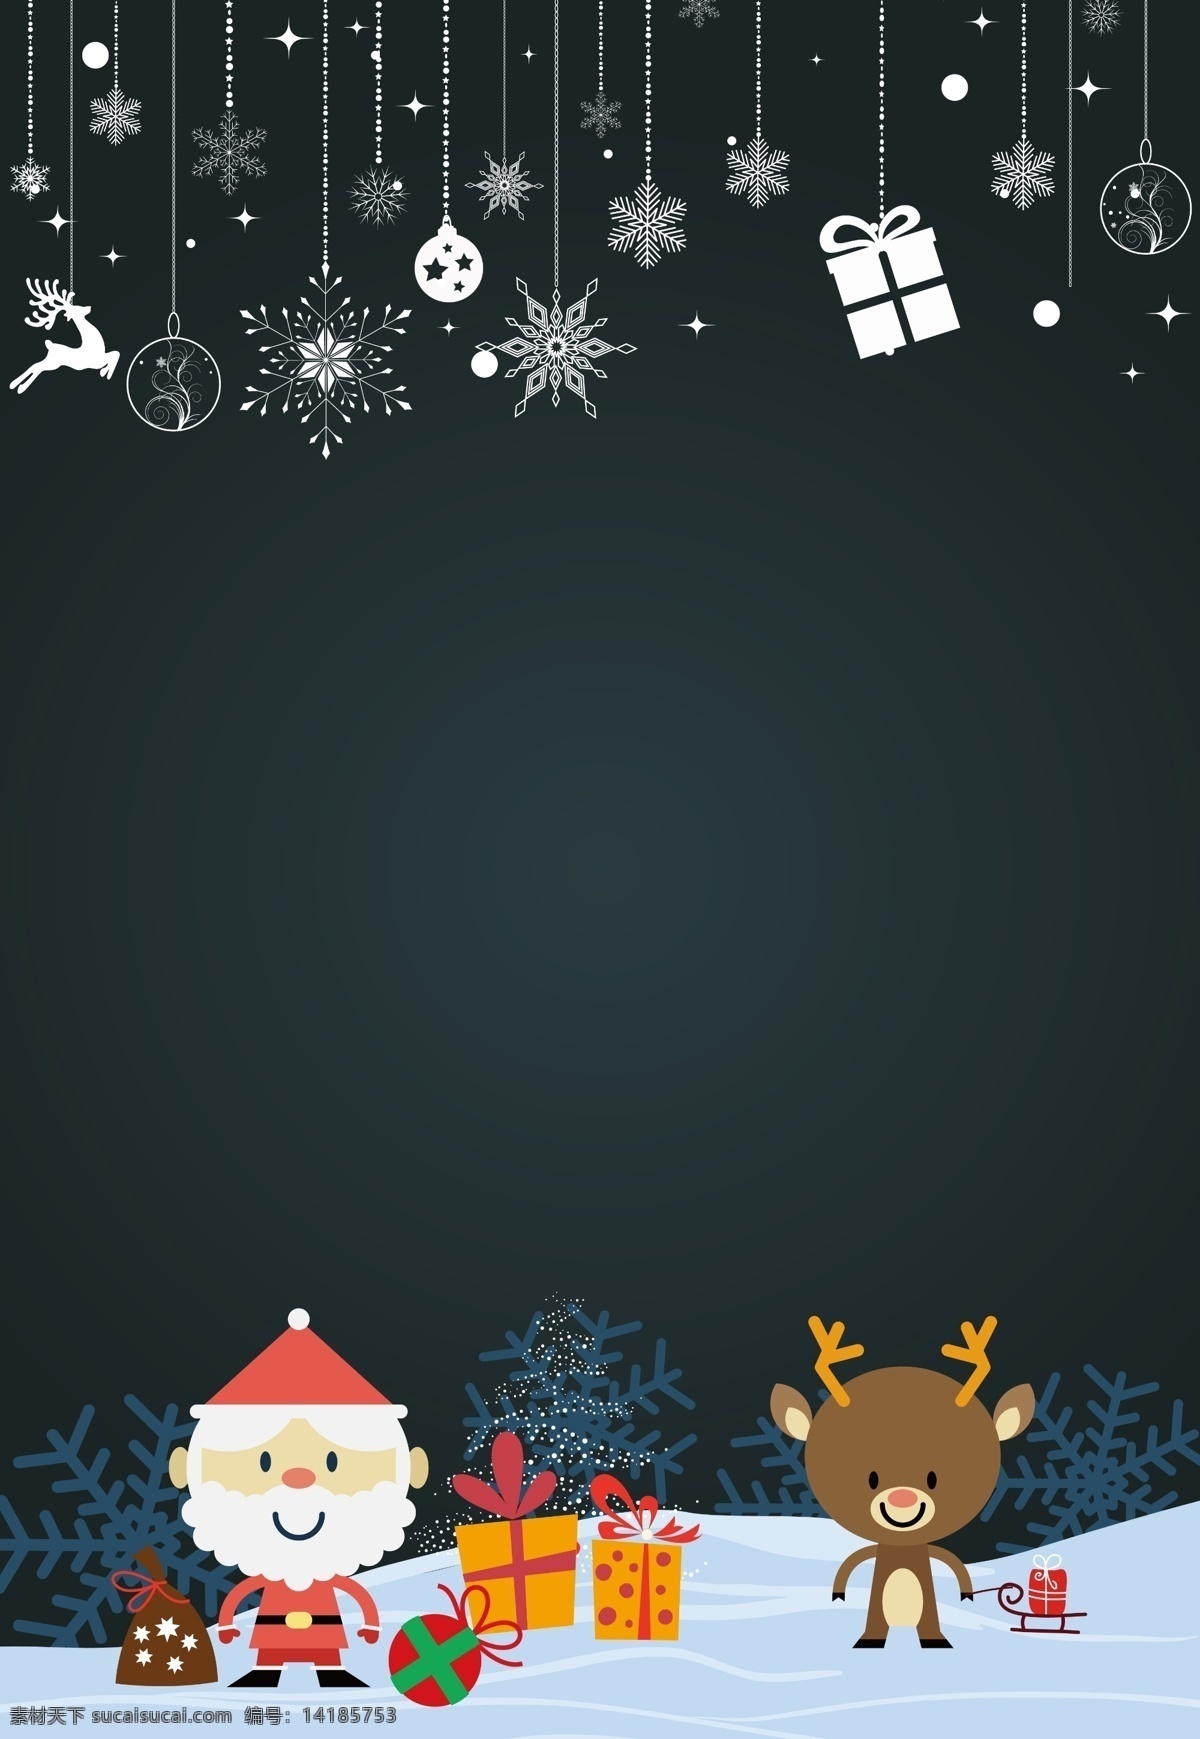 卡通 圣诞节 背景 雪花 黑色背景 圣诞背景 圣诞素材 卡通背景 雪人 麋鹿 圣诞装饰 圣诞活动 圣诞促销